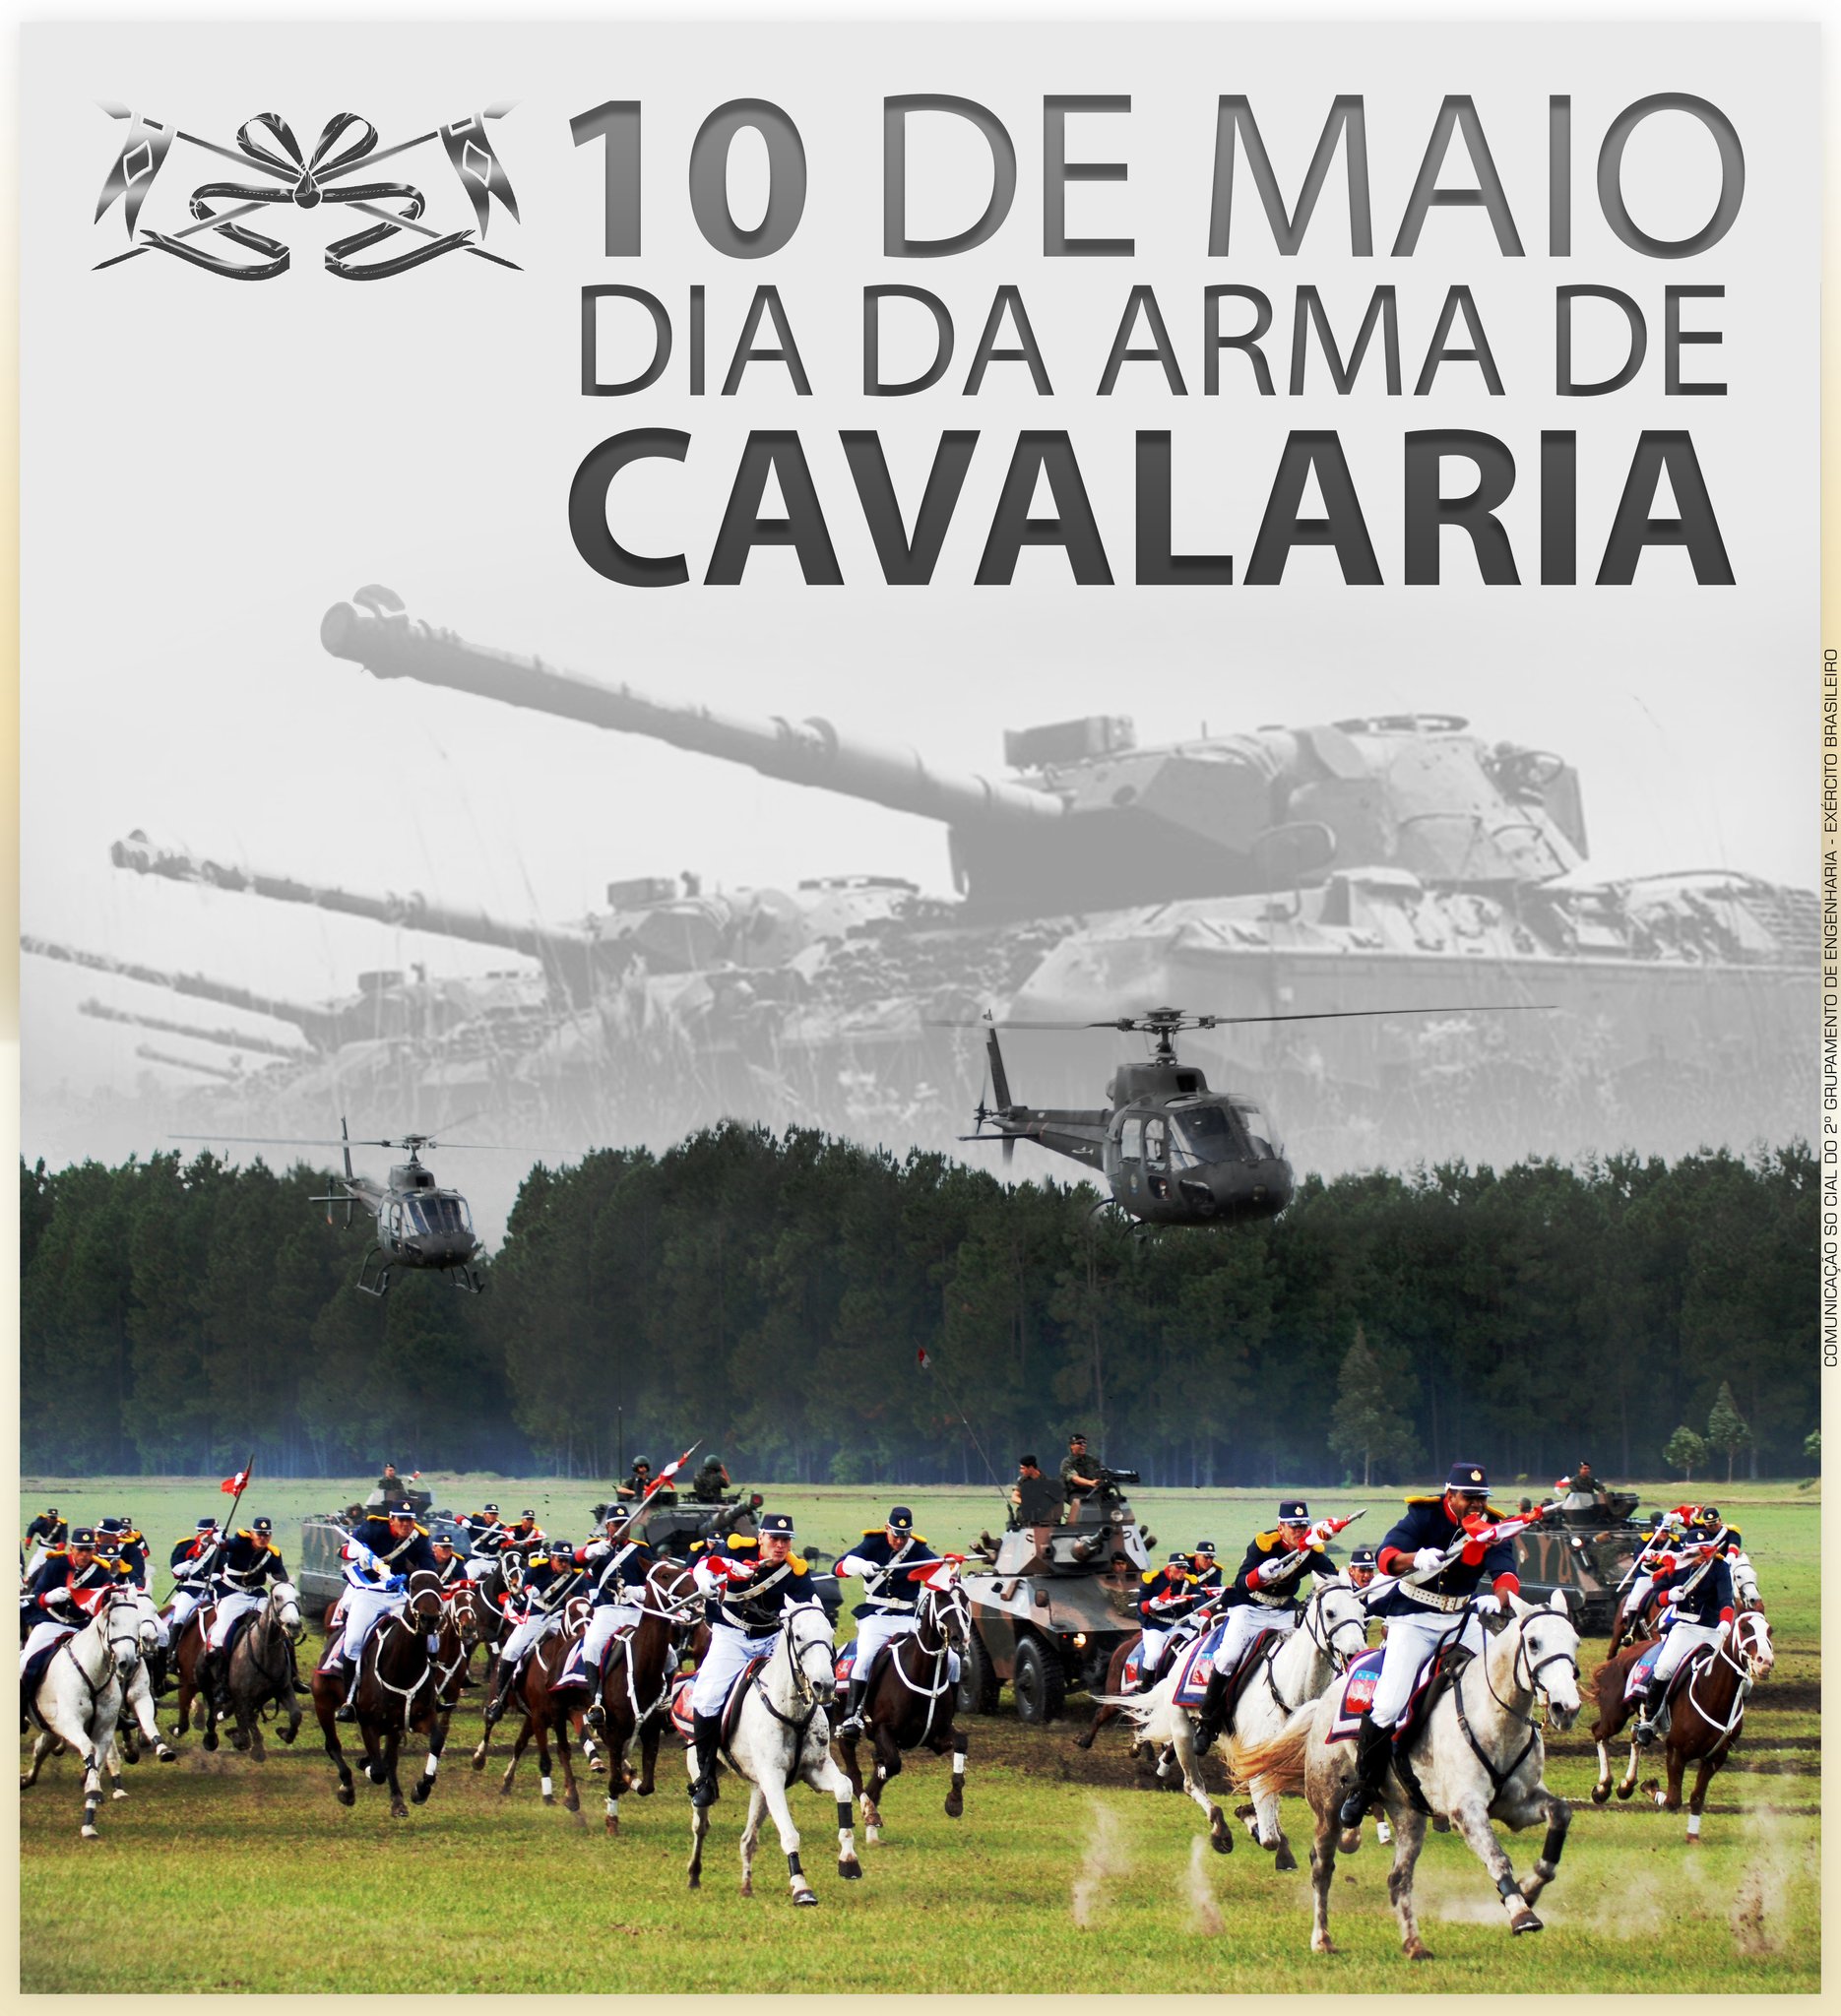 Cavalaria